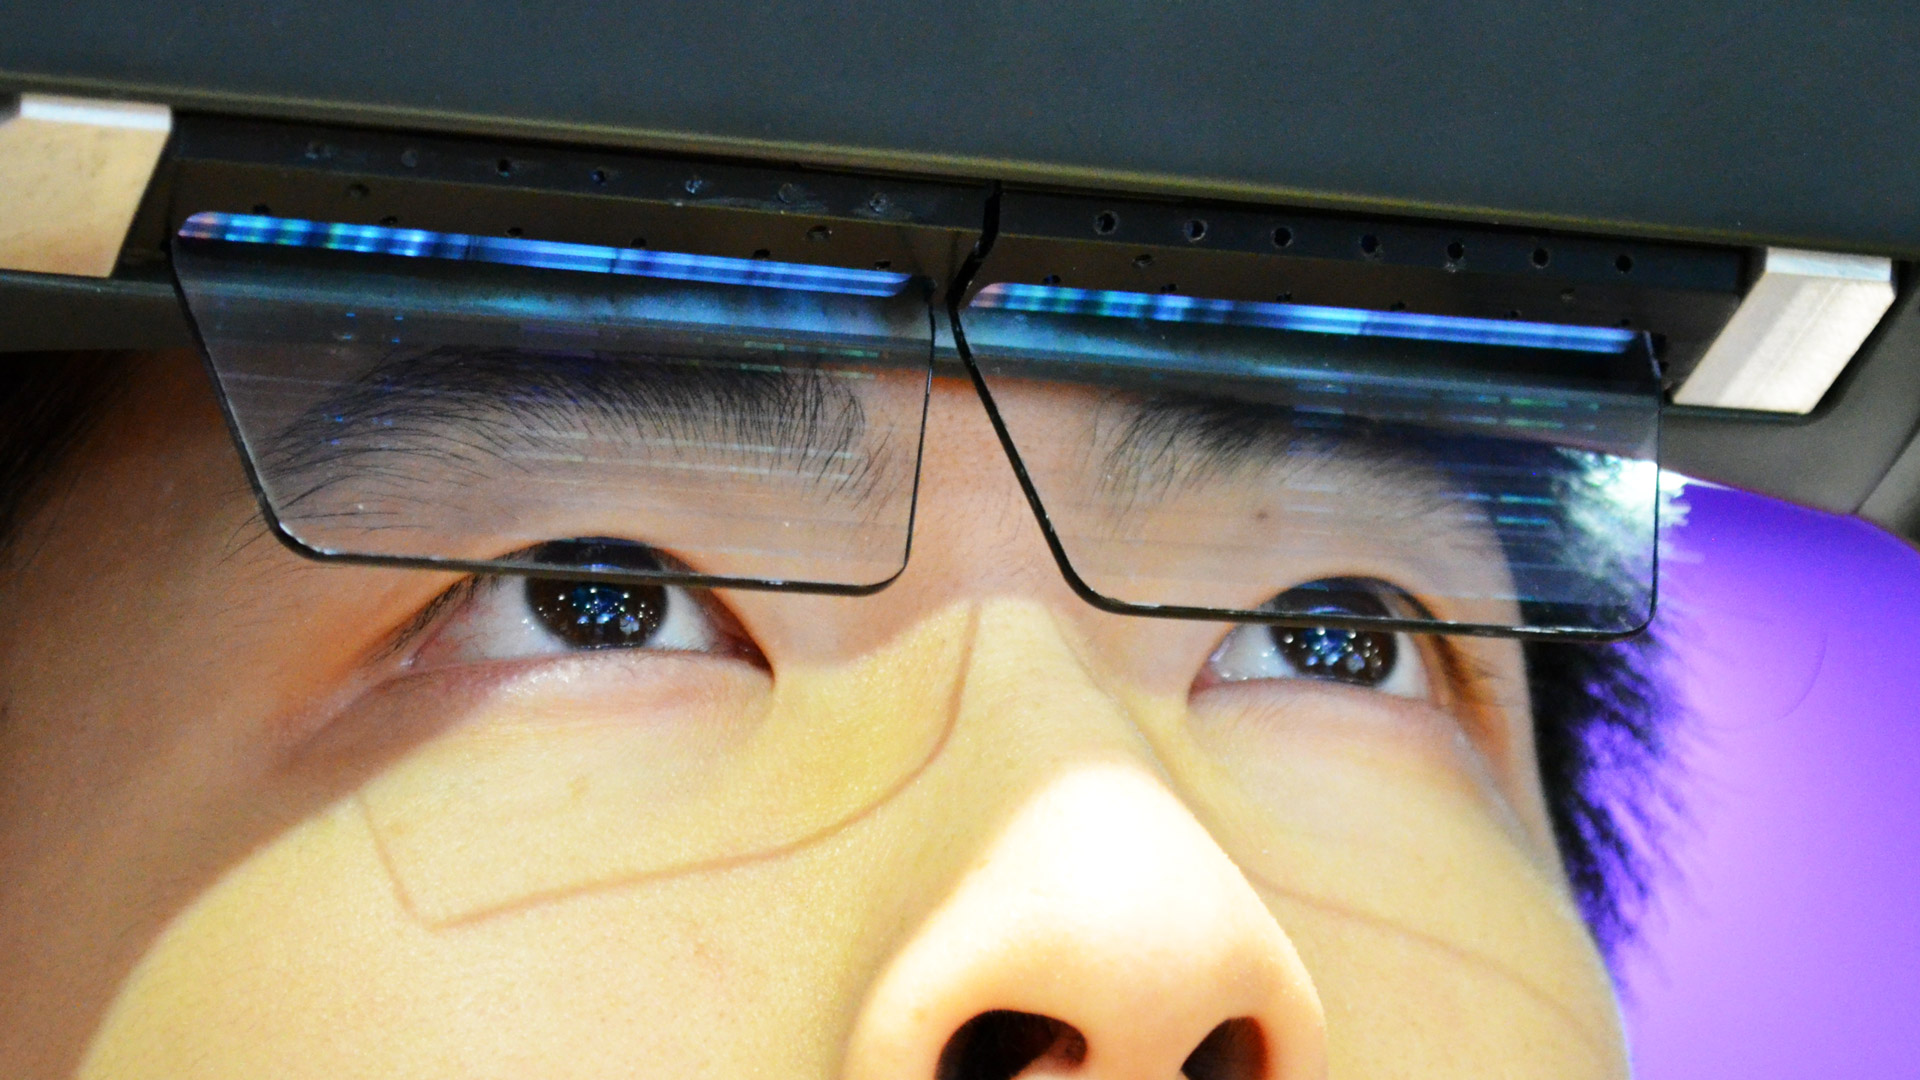 Vr vision pro. Очки с проекцией. Очки дополненной реальности. Очки с проекционным экраном. Ar очки с дополненной реальностью.